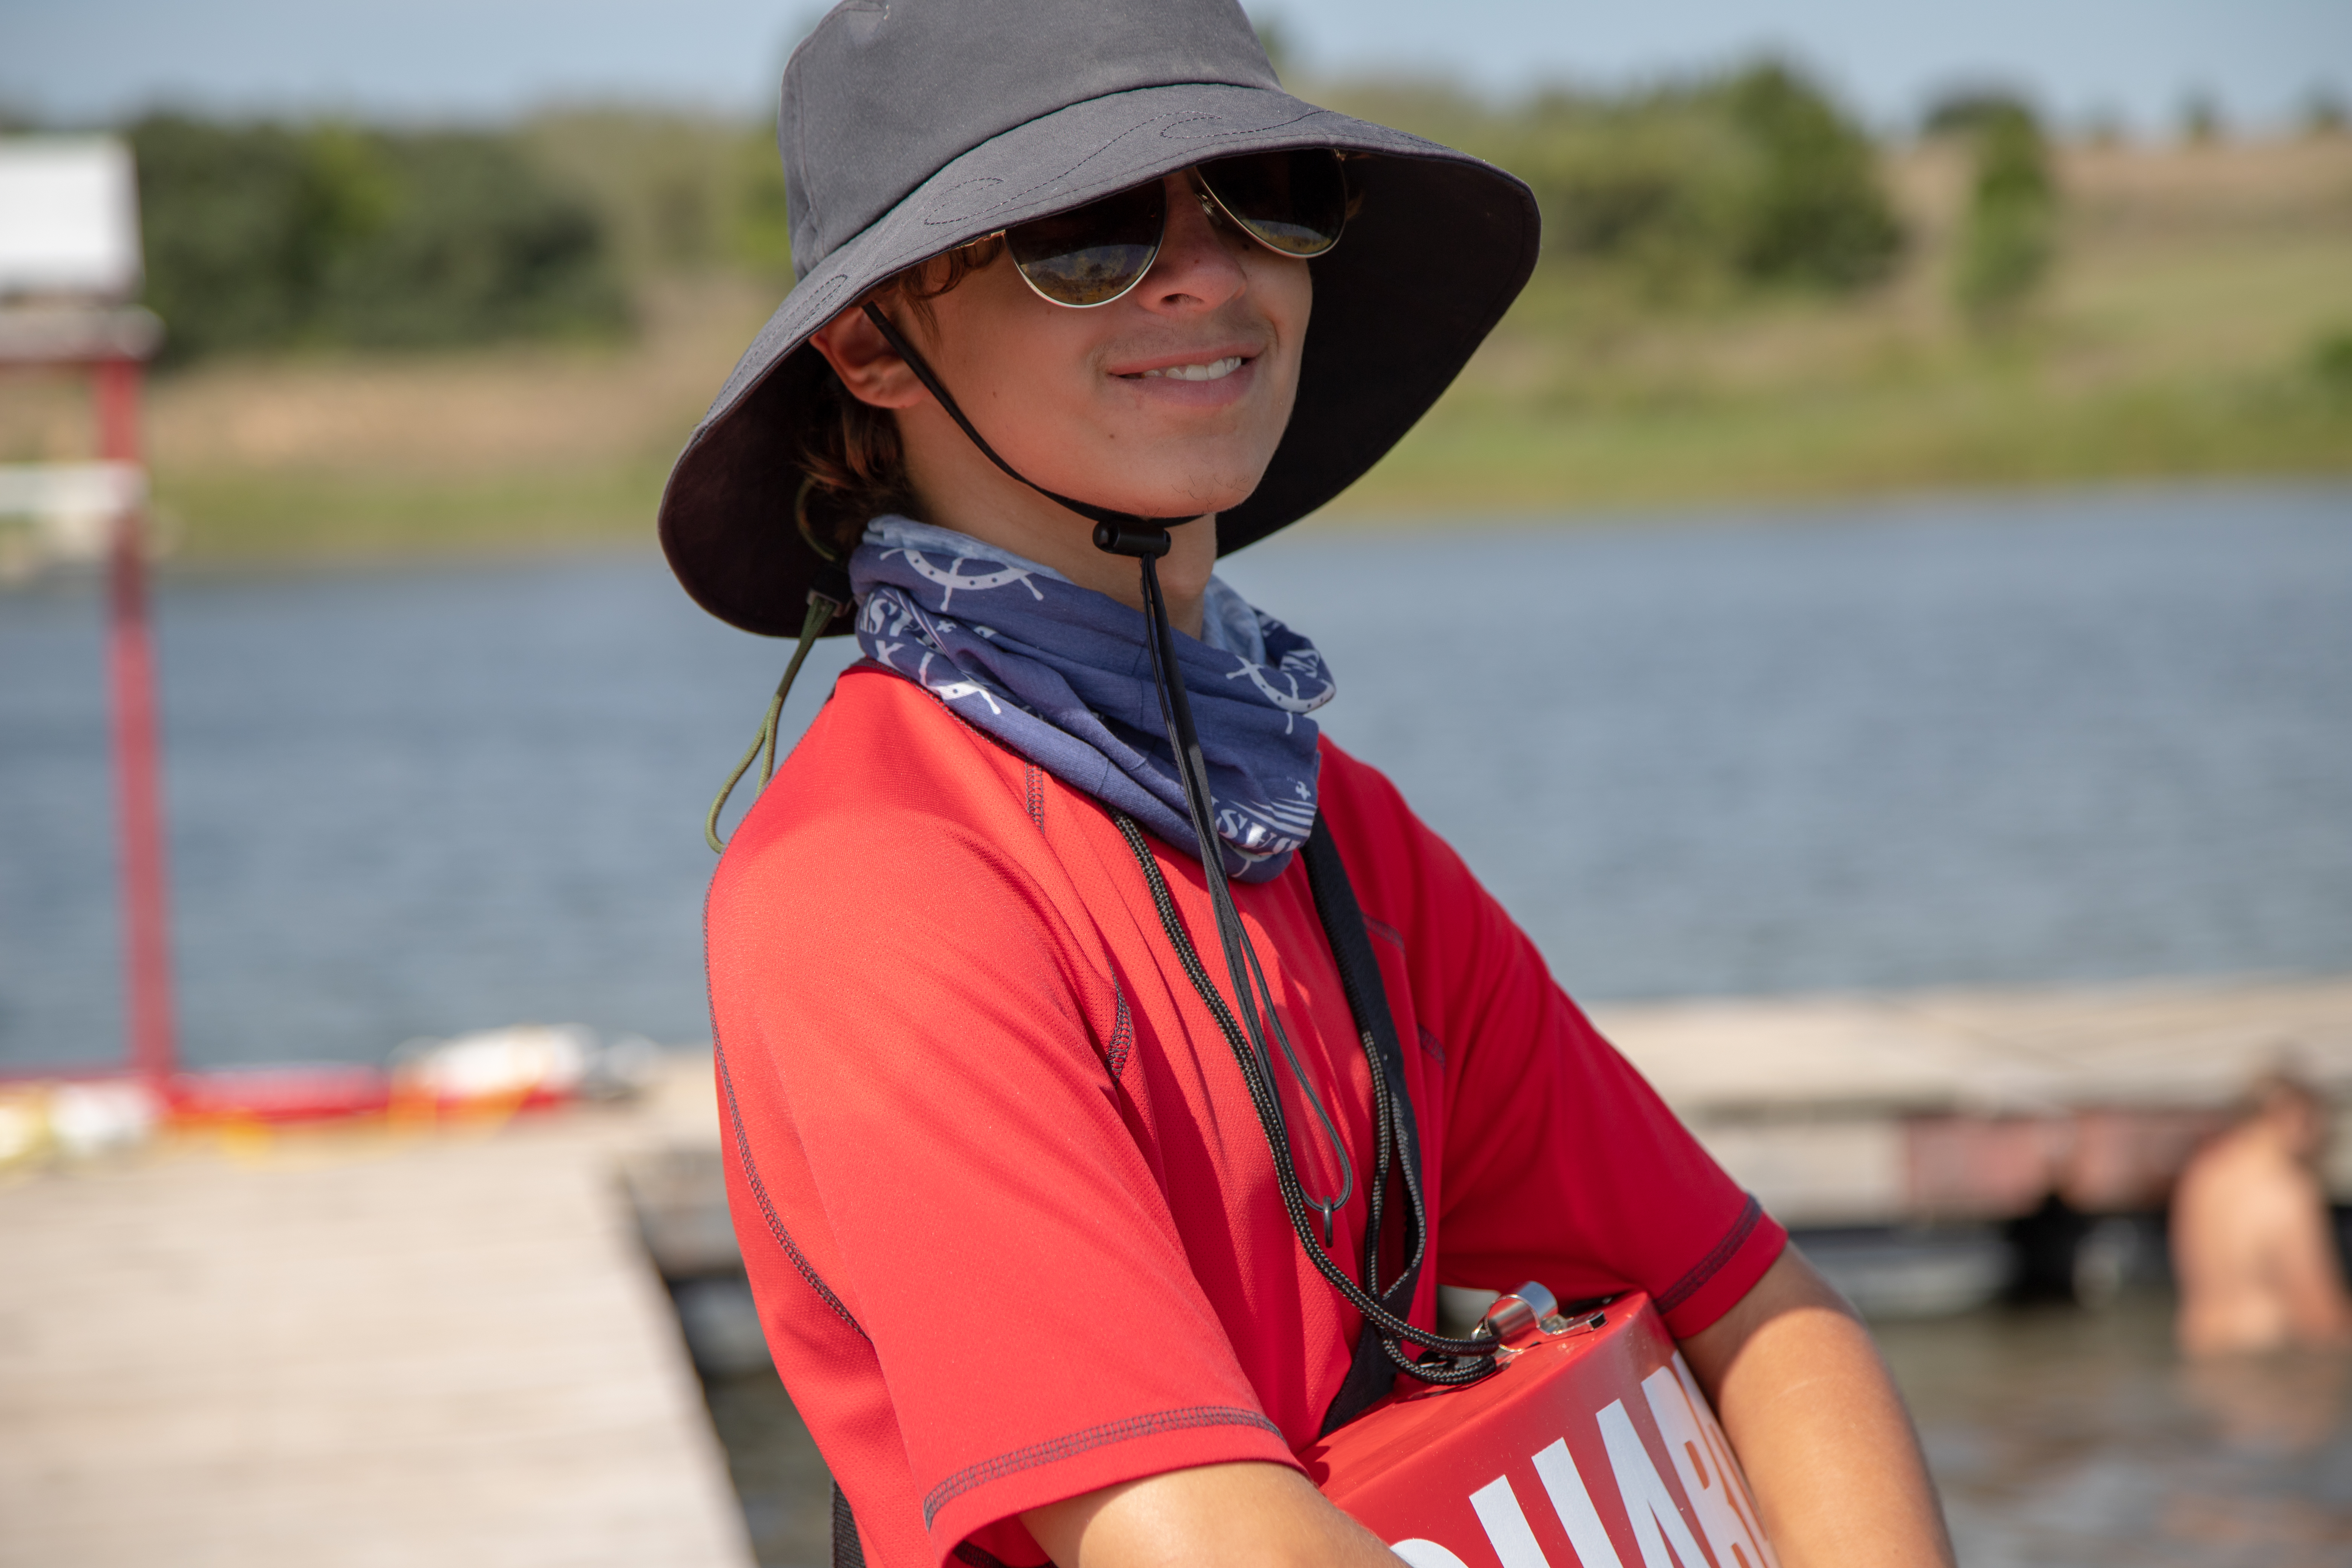 BSA Lifeguard/Scout